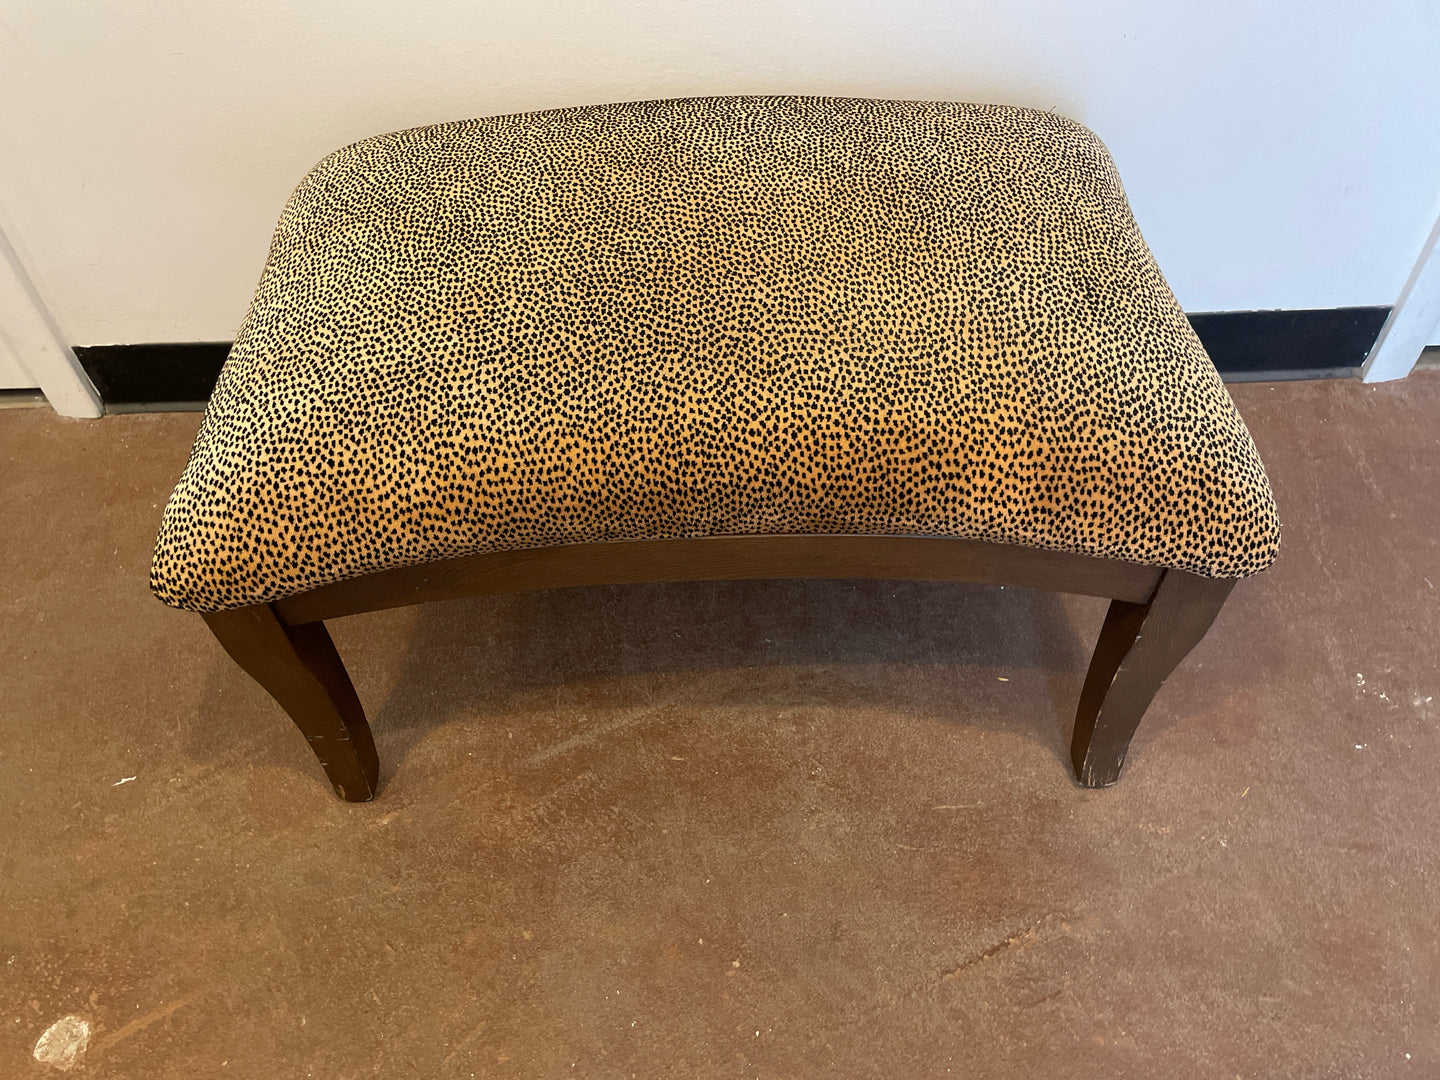 Leopard Patterned Ottoman/Footstool